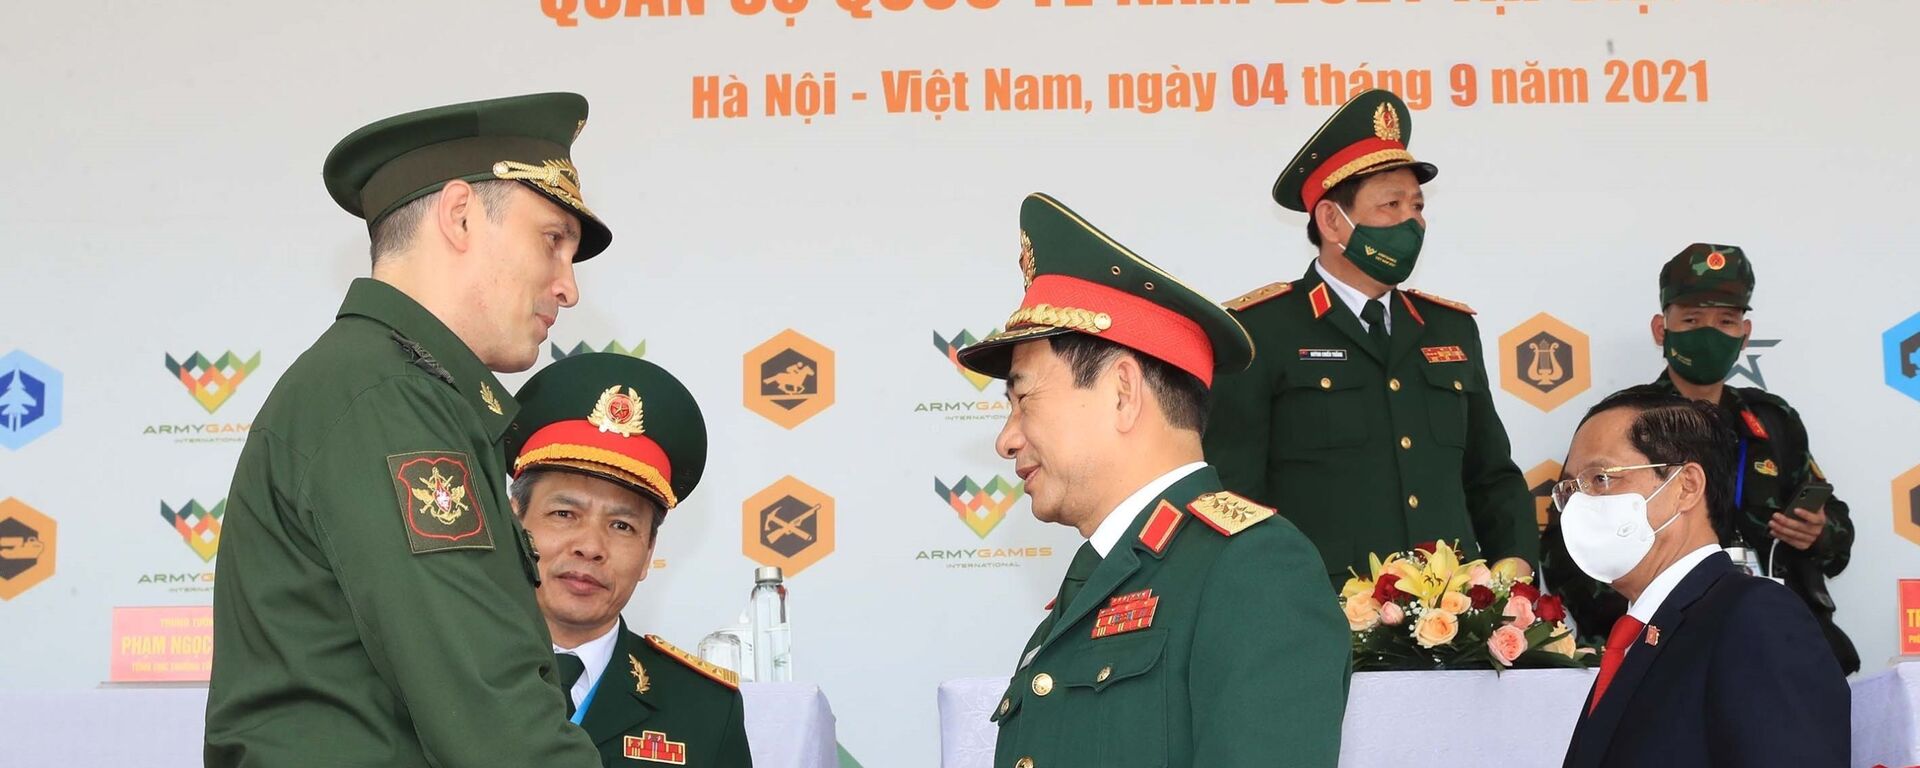 Đại tướng, Bộ trưởng Quốc phòng Phan Văn Giang và Thứ trưởng Bộ Quốc phòng Liên bang Nga Aleksei Krivoruchko tại lễ bế mạc Army Games 2021 - Sputnik Việt Nam, 1920, 06.09.2021